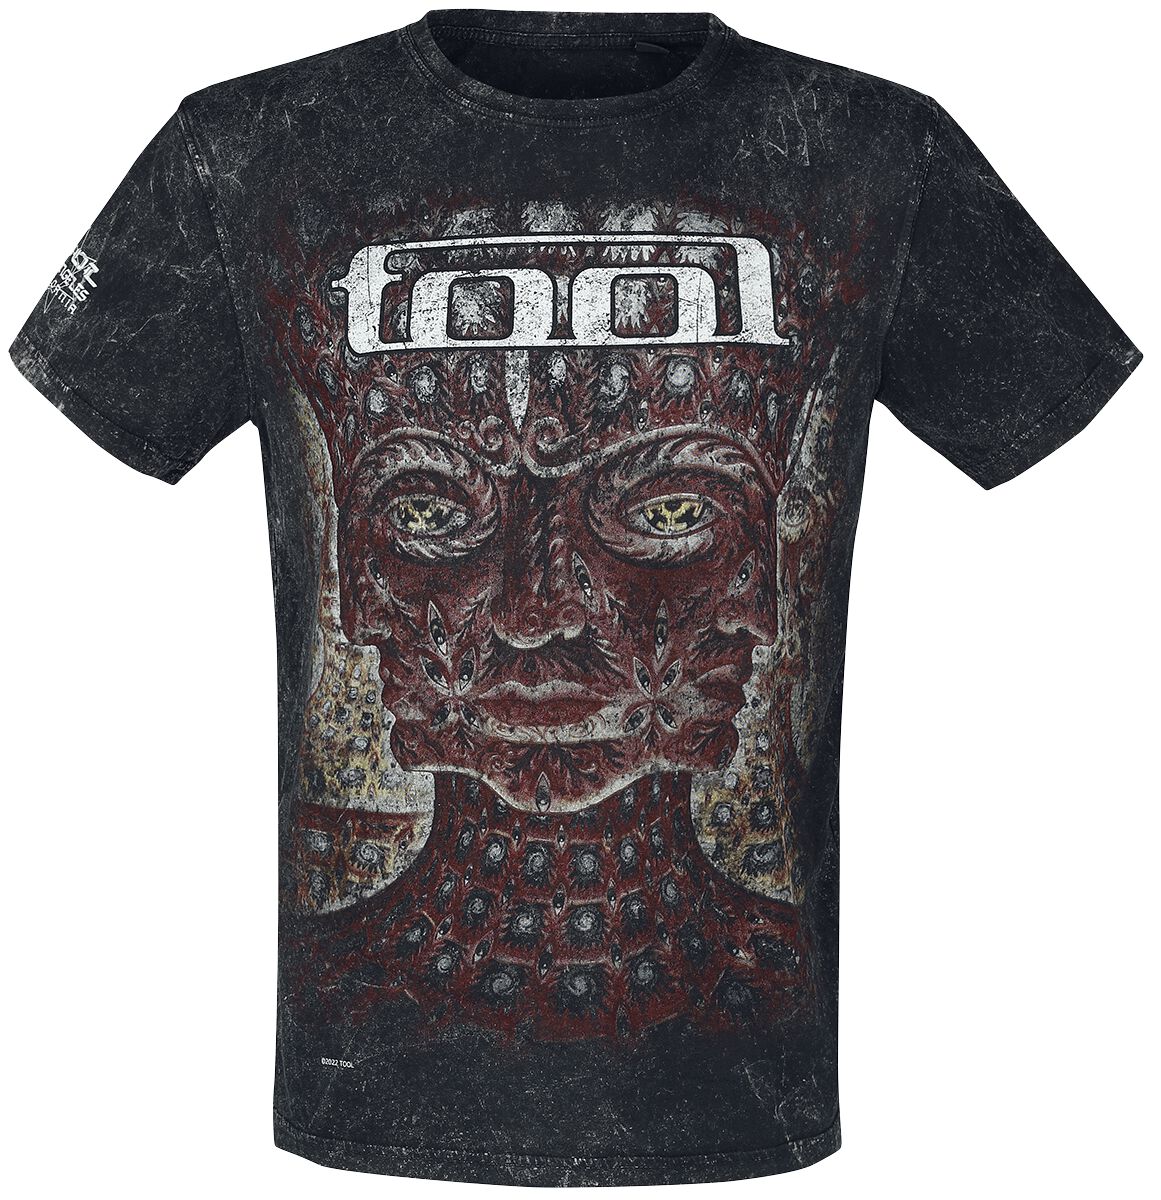 Tool T-Shirt - Lateralus - S bis 3XL - für Männer - Größe L - schwarz  - Lizenziertes Merchandise!